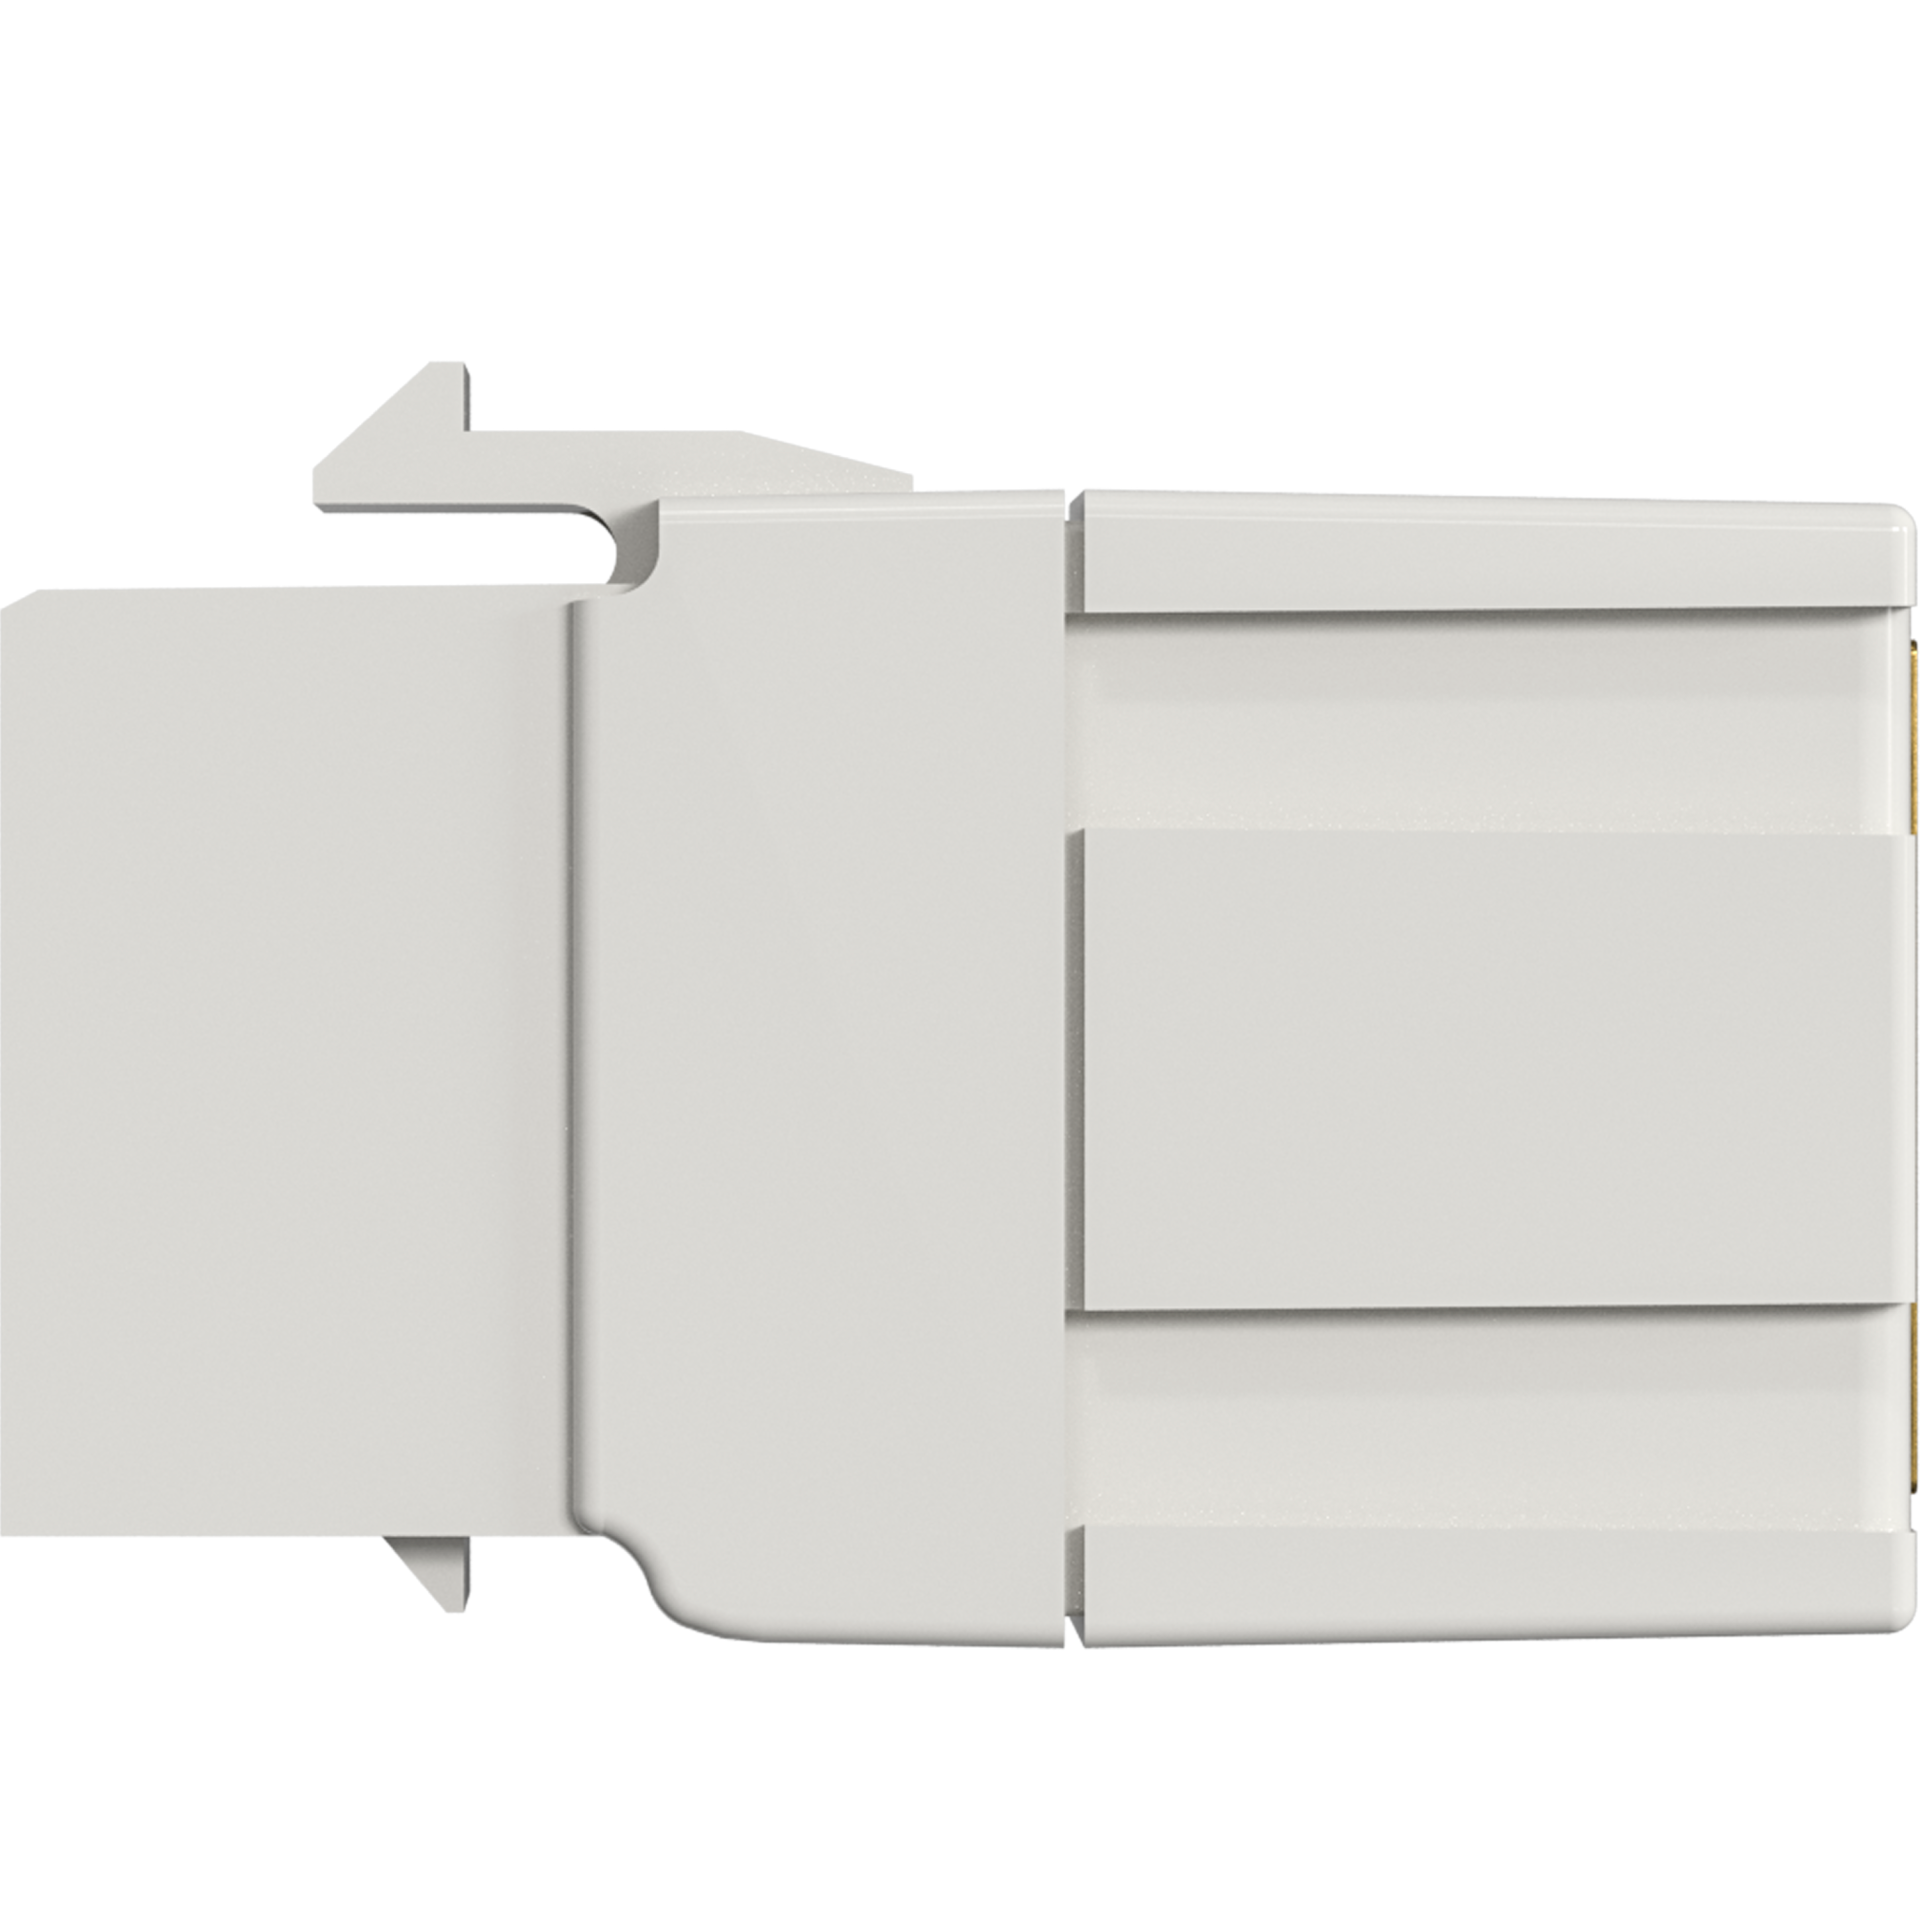 Keystone Einbauadapter HDMI A - A, weiß